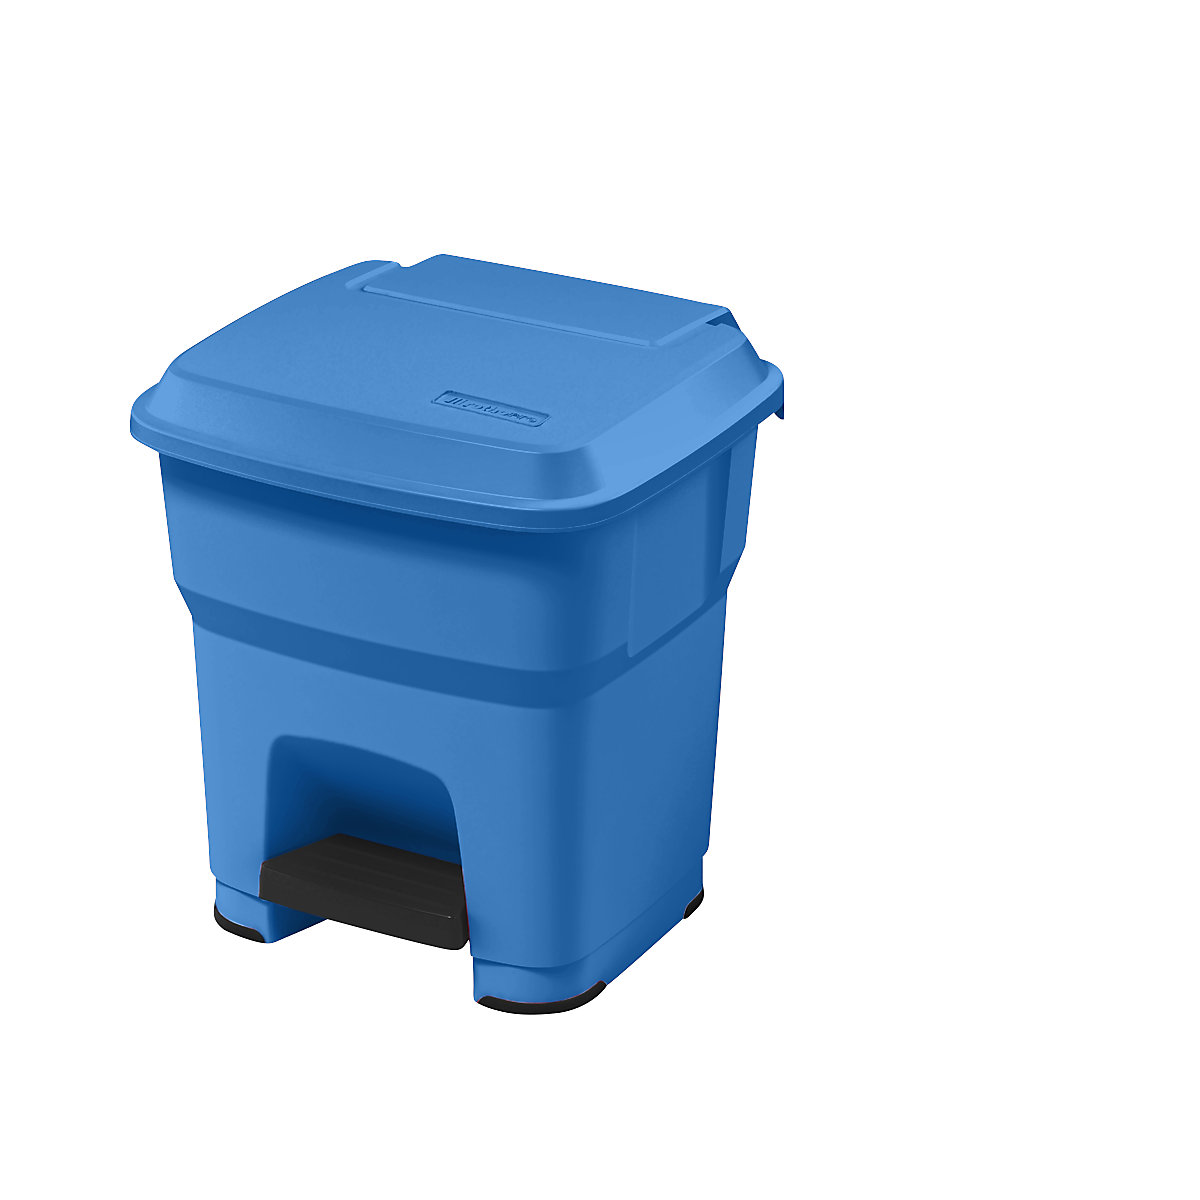 rothopro – Collecteur de déchets à pédale HERA, capacité 35 l, l x h x p 390 x 440 x 390 mm, bleu